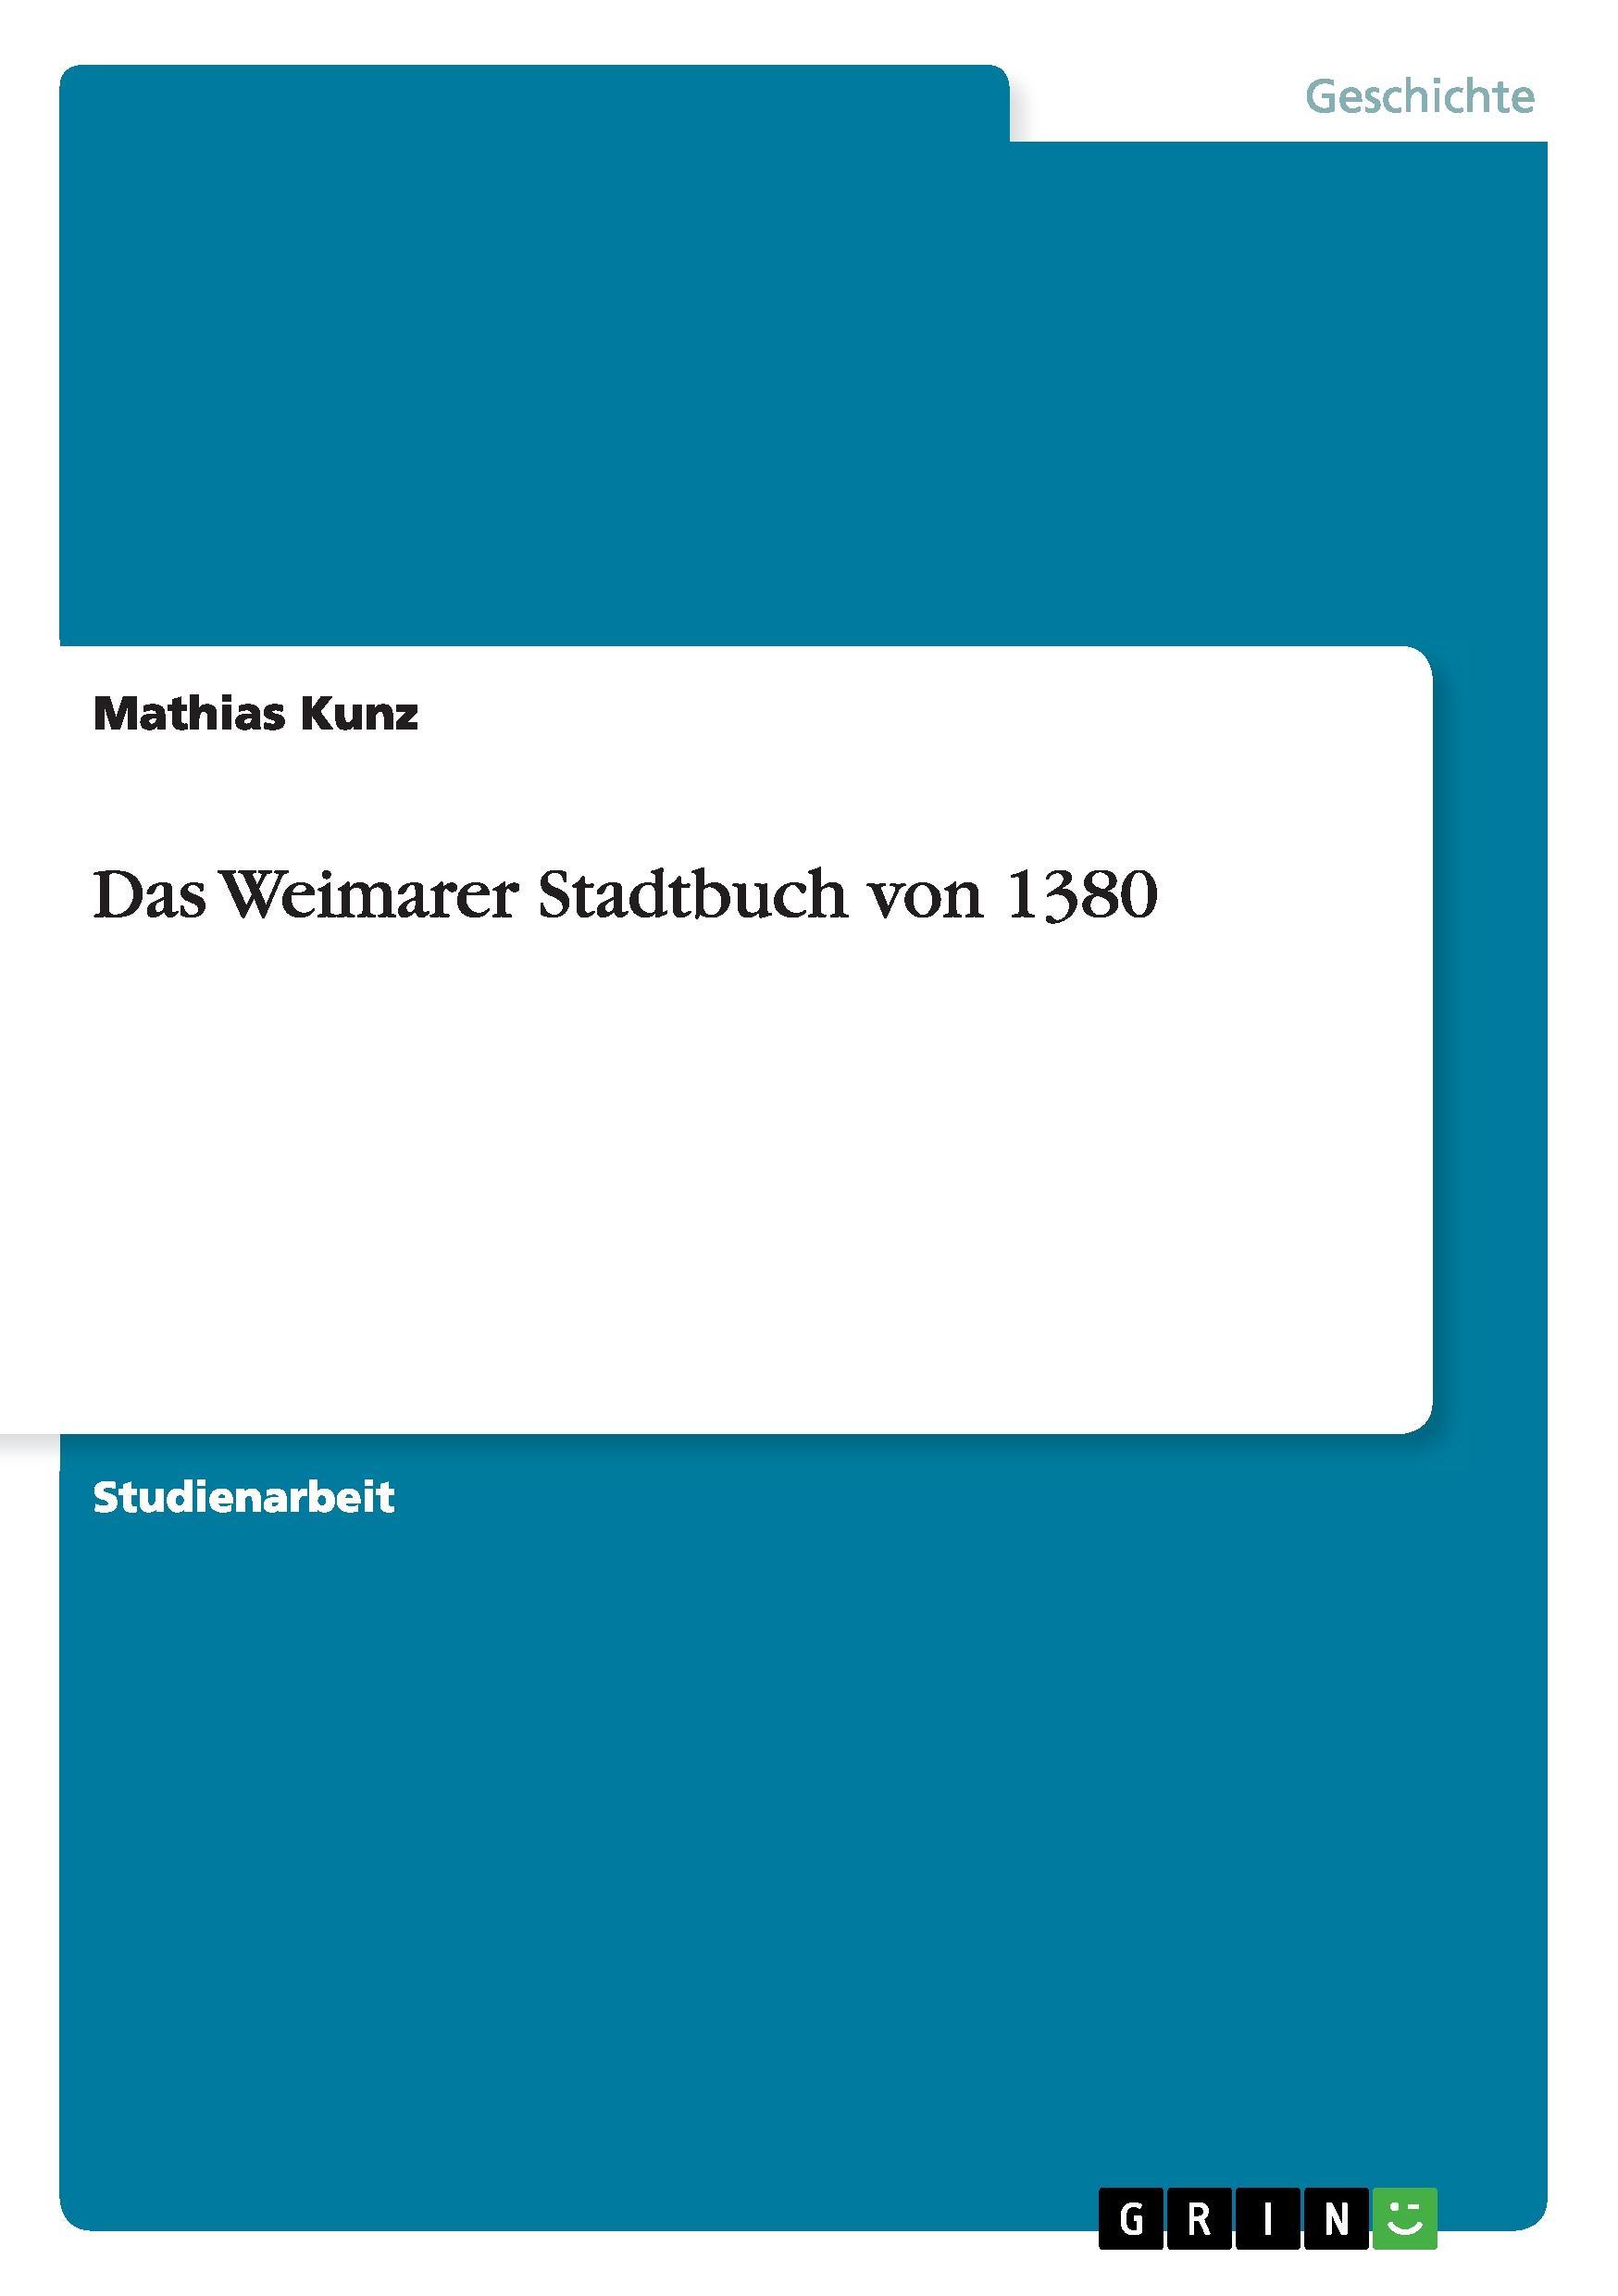 Das Weimarer Stadtbuch von 1380 - Kunz, Mathias